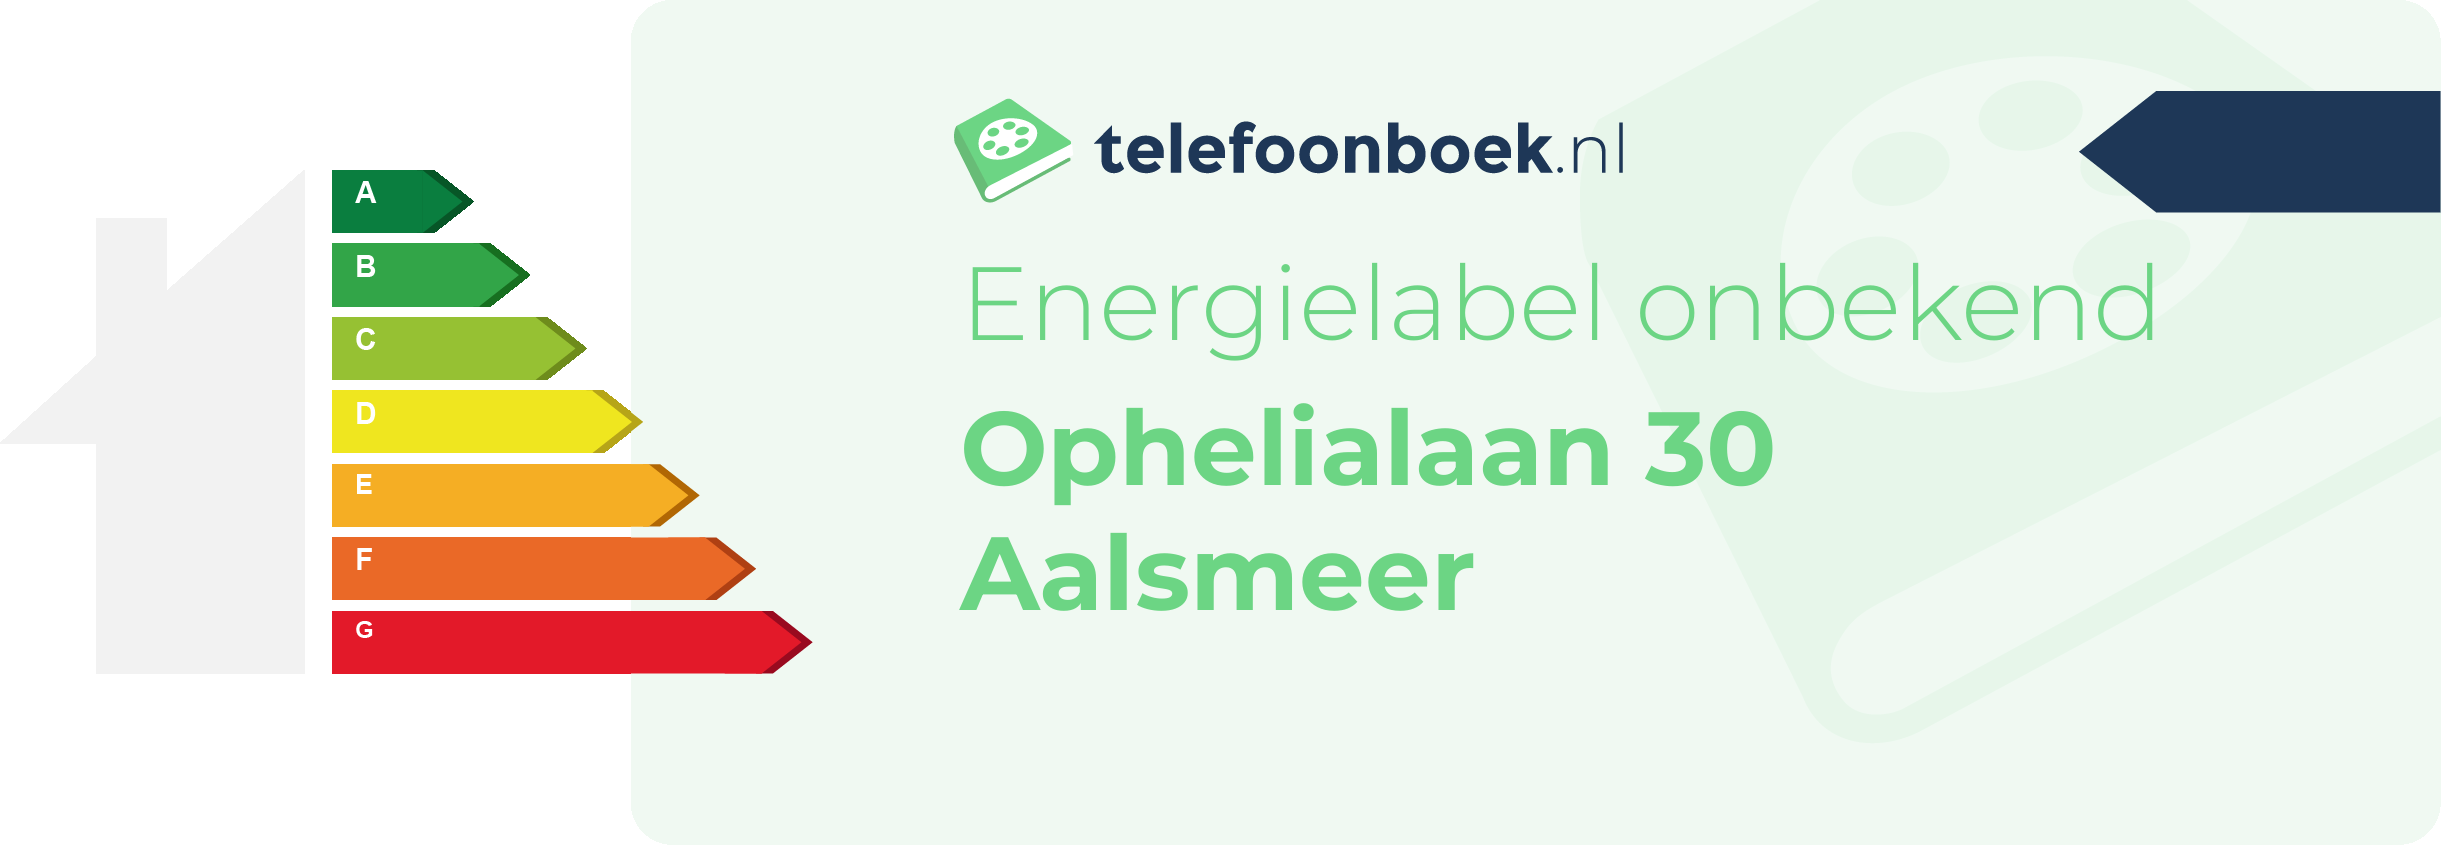 Energielabel Ophelialaan 30 Aalsmeer